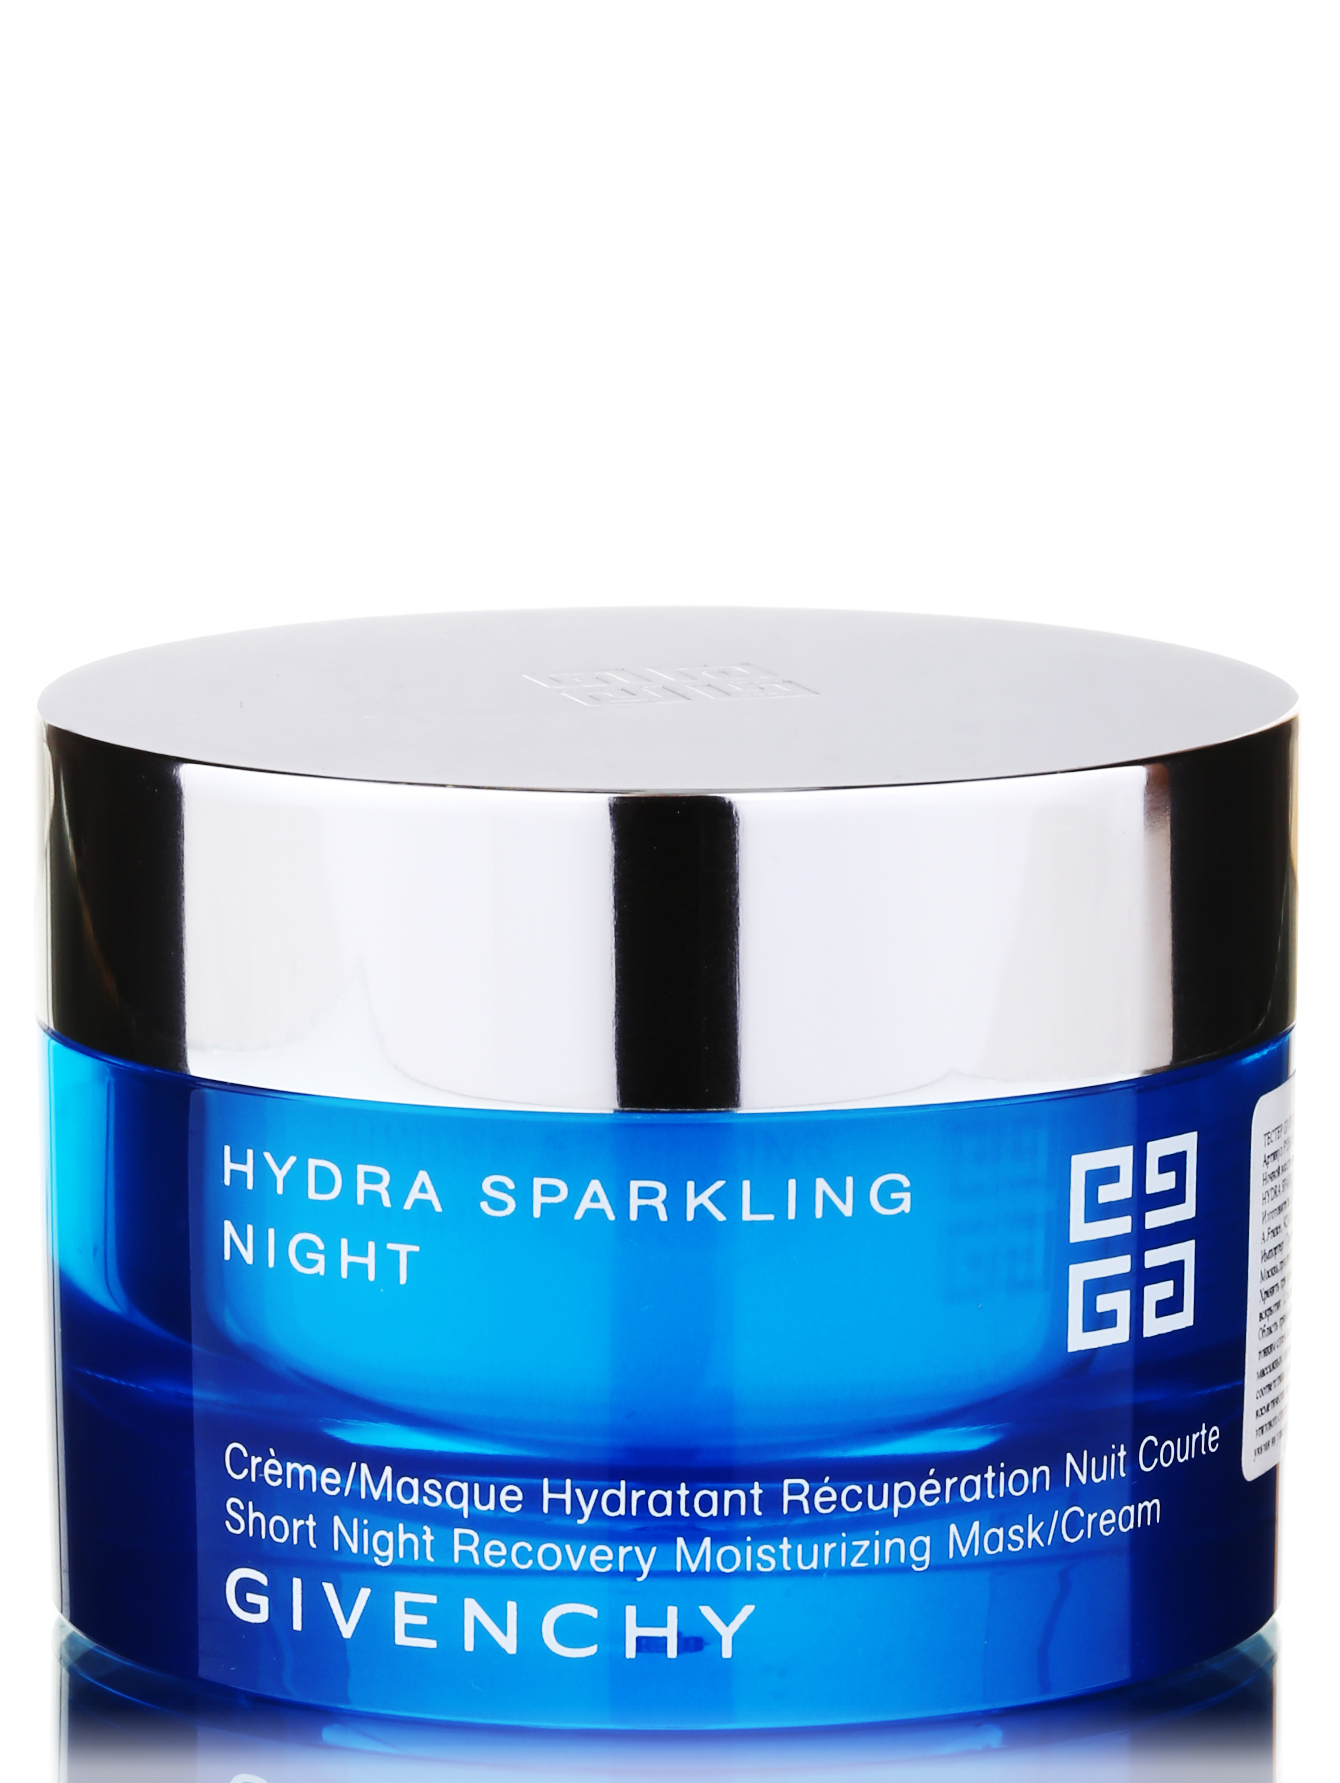  Ночной крем -маска для лица - Hydra Sparkling, 50ml - Общий вид